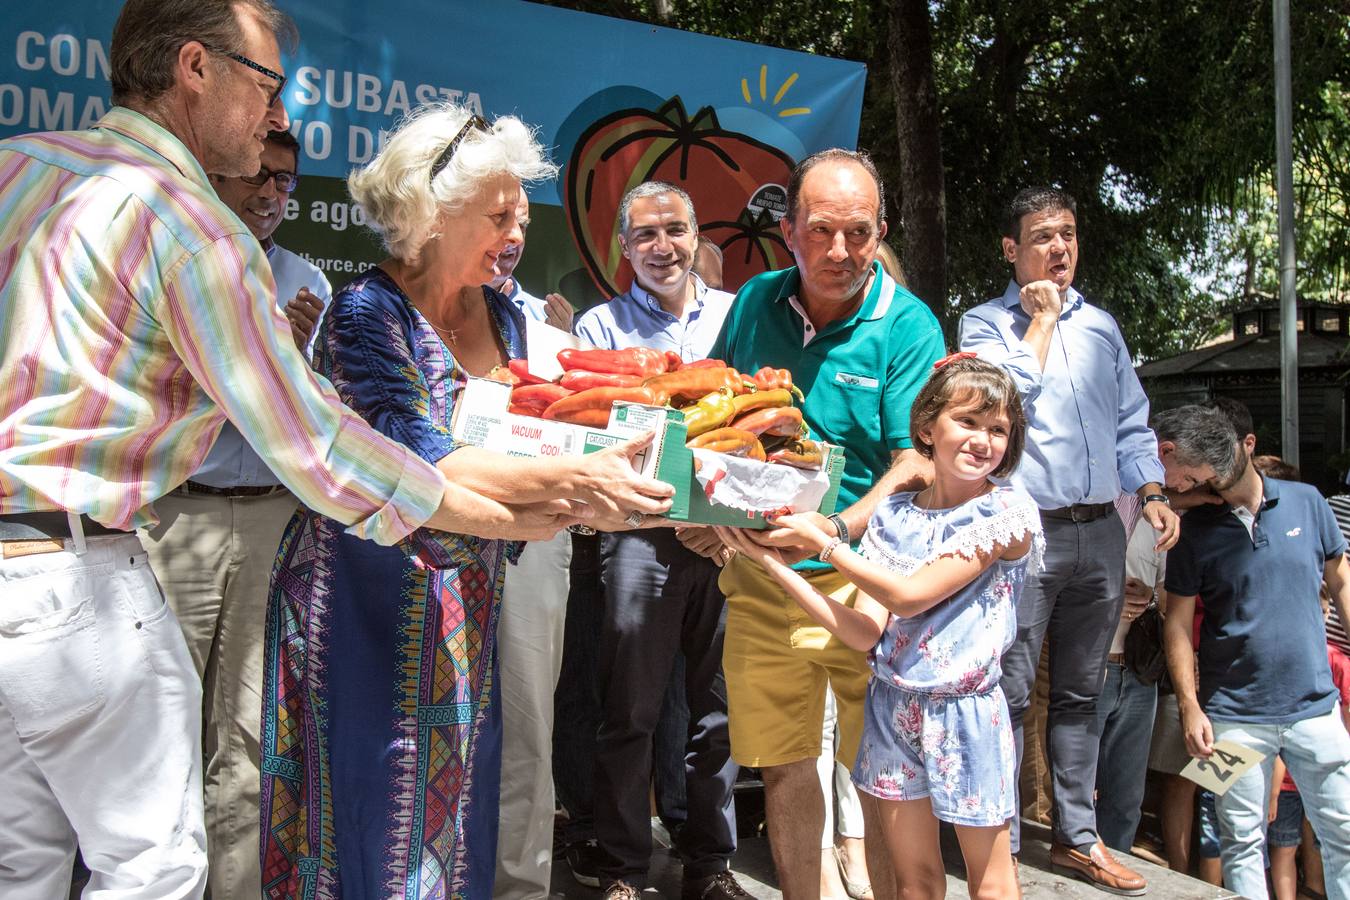 Pepe Cobos de El Pimpi se ha hecho un año más con las hortalizas más valoradas de la provincia tras una frenética puja